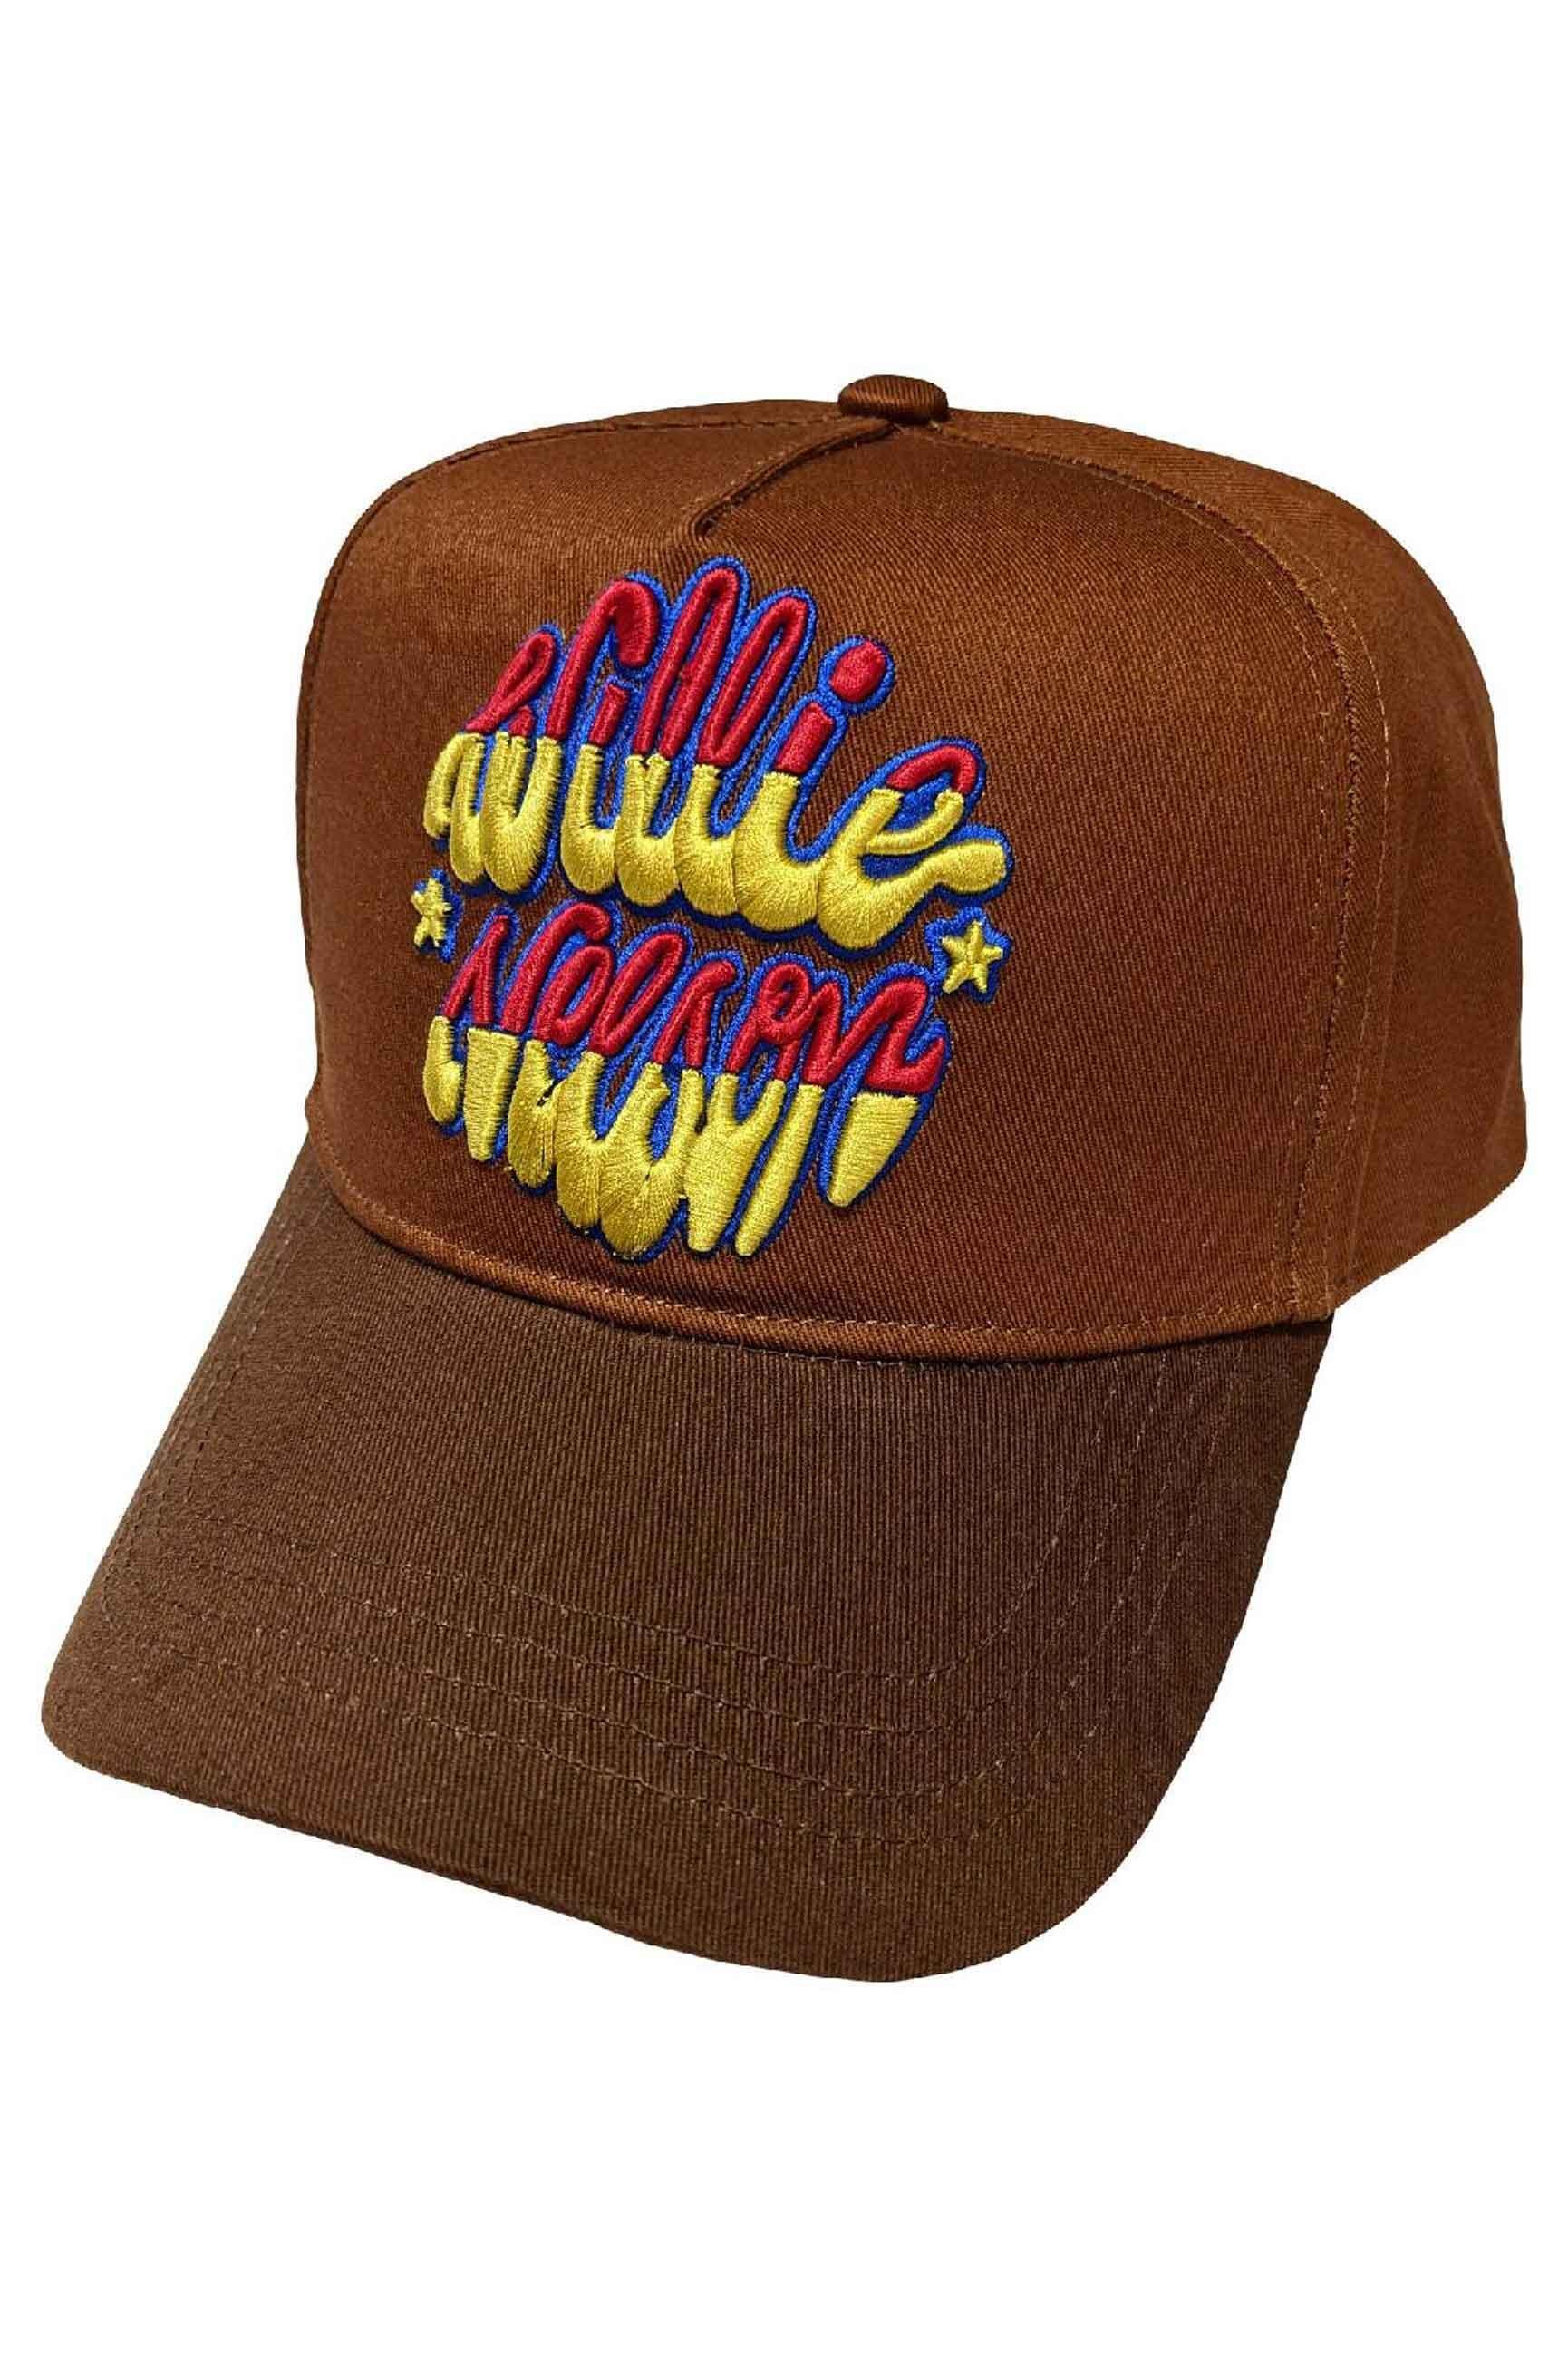 Бейсбольная кепка с логотипом и эмблемой Willie Nelson, коричневый бейсболка modniki темно серый 54 56